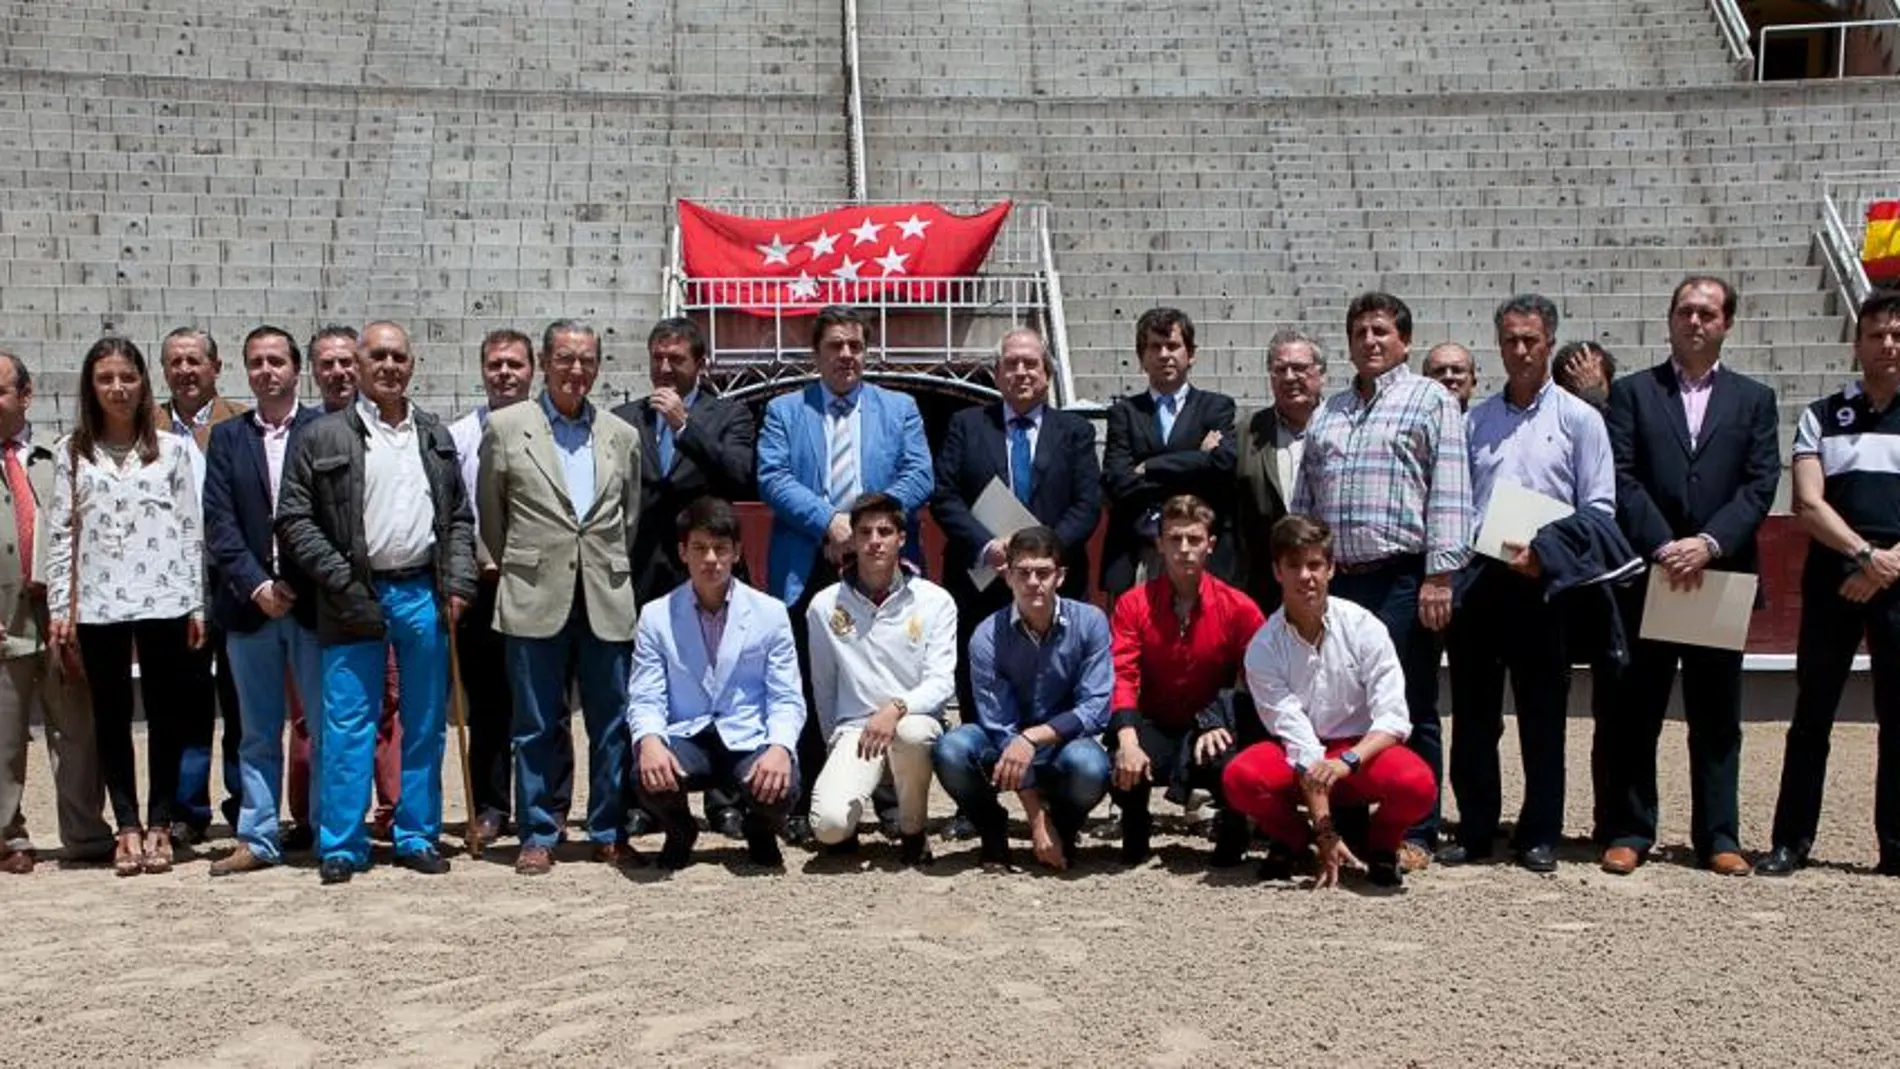 Representantes de las escuelas taurinas, de las localidades, alumnos y empresas, posan en el ruedo de Las Ventas